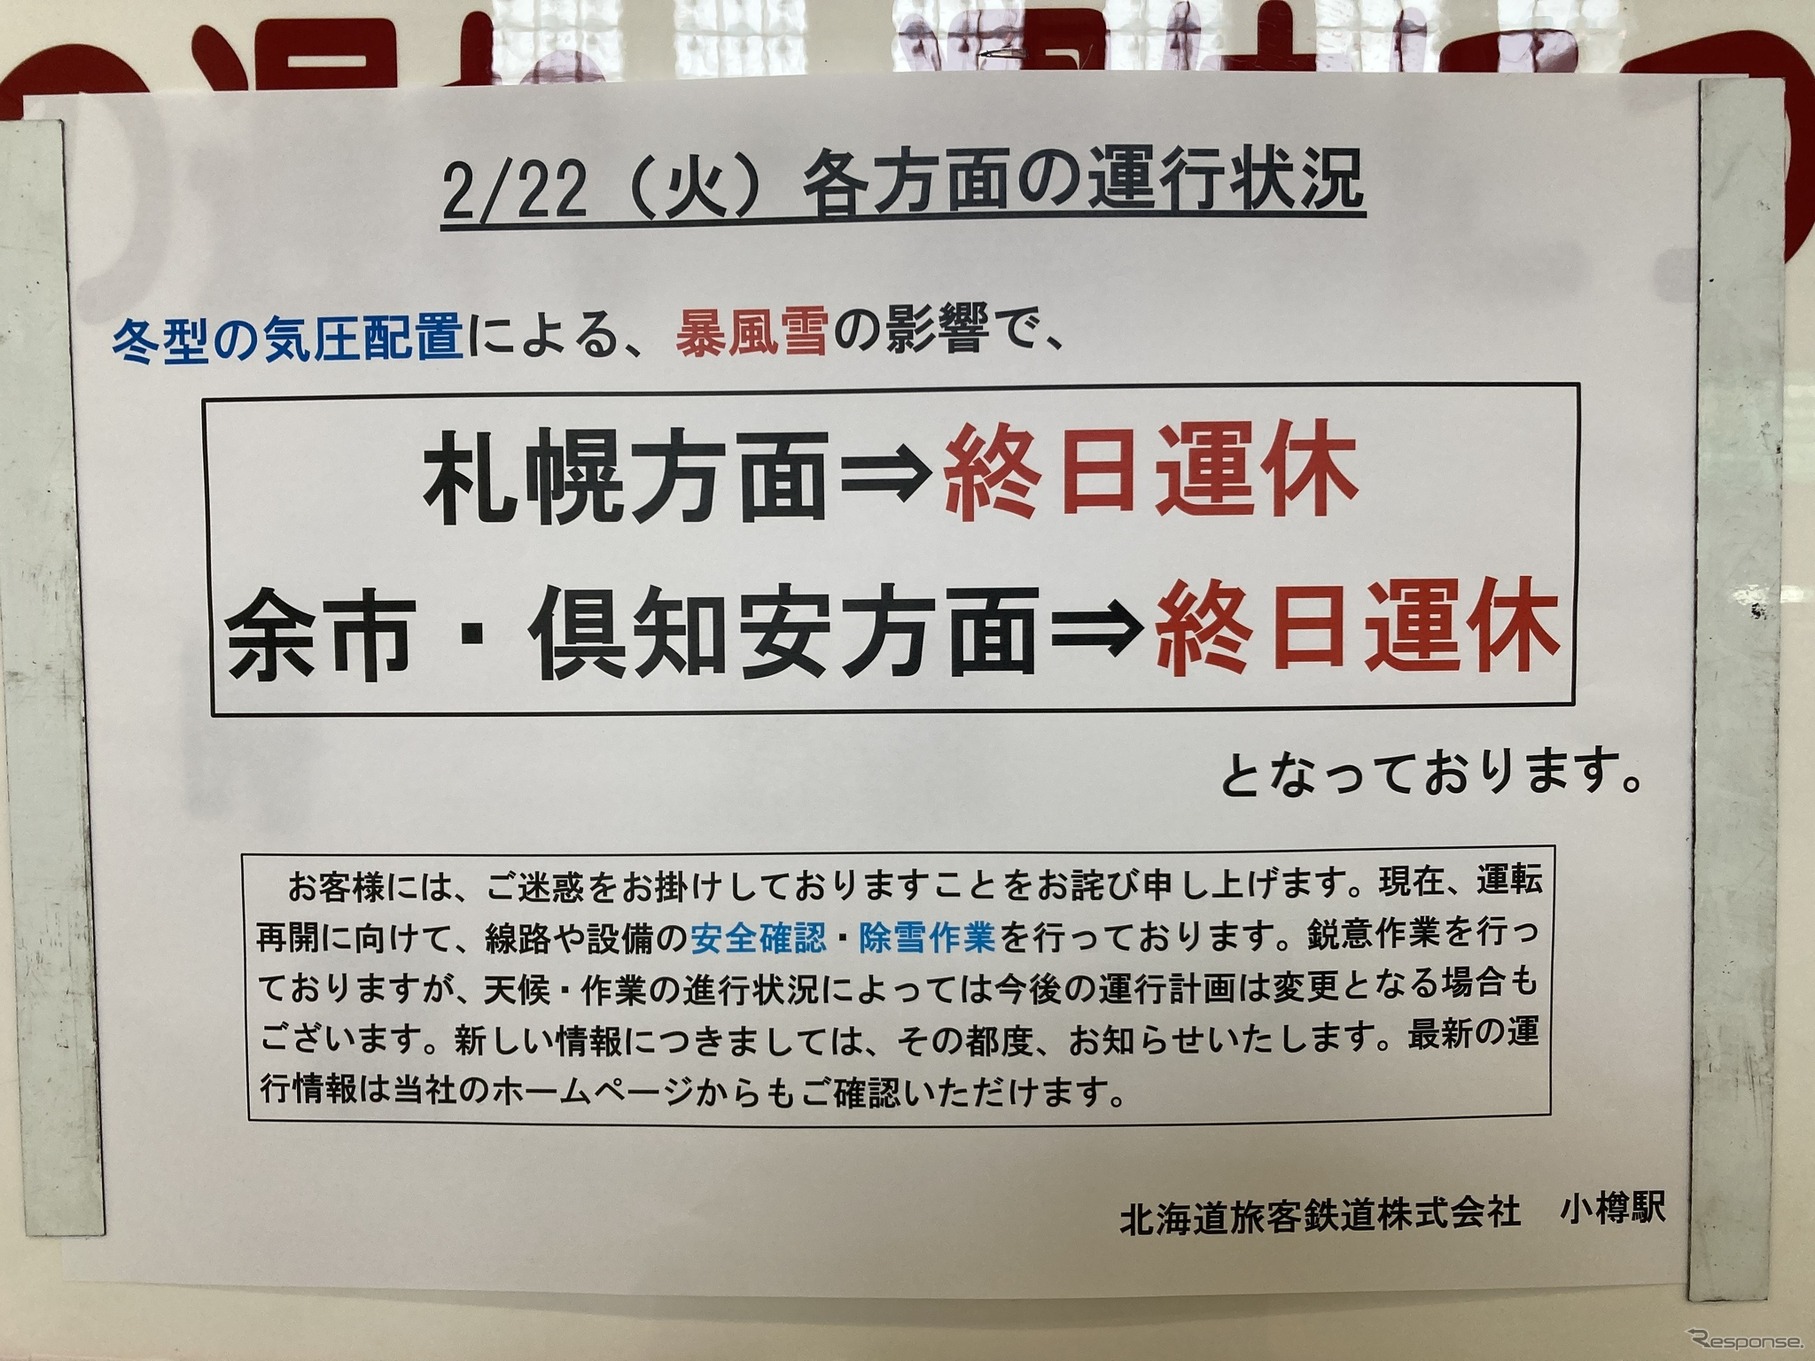 函館本線小樽駅での運休掲示（2月22日）。札幌圏の最西端である小樽駅でも約1週間、札幌方面からの列車が来ない日が続いた。